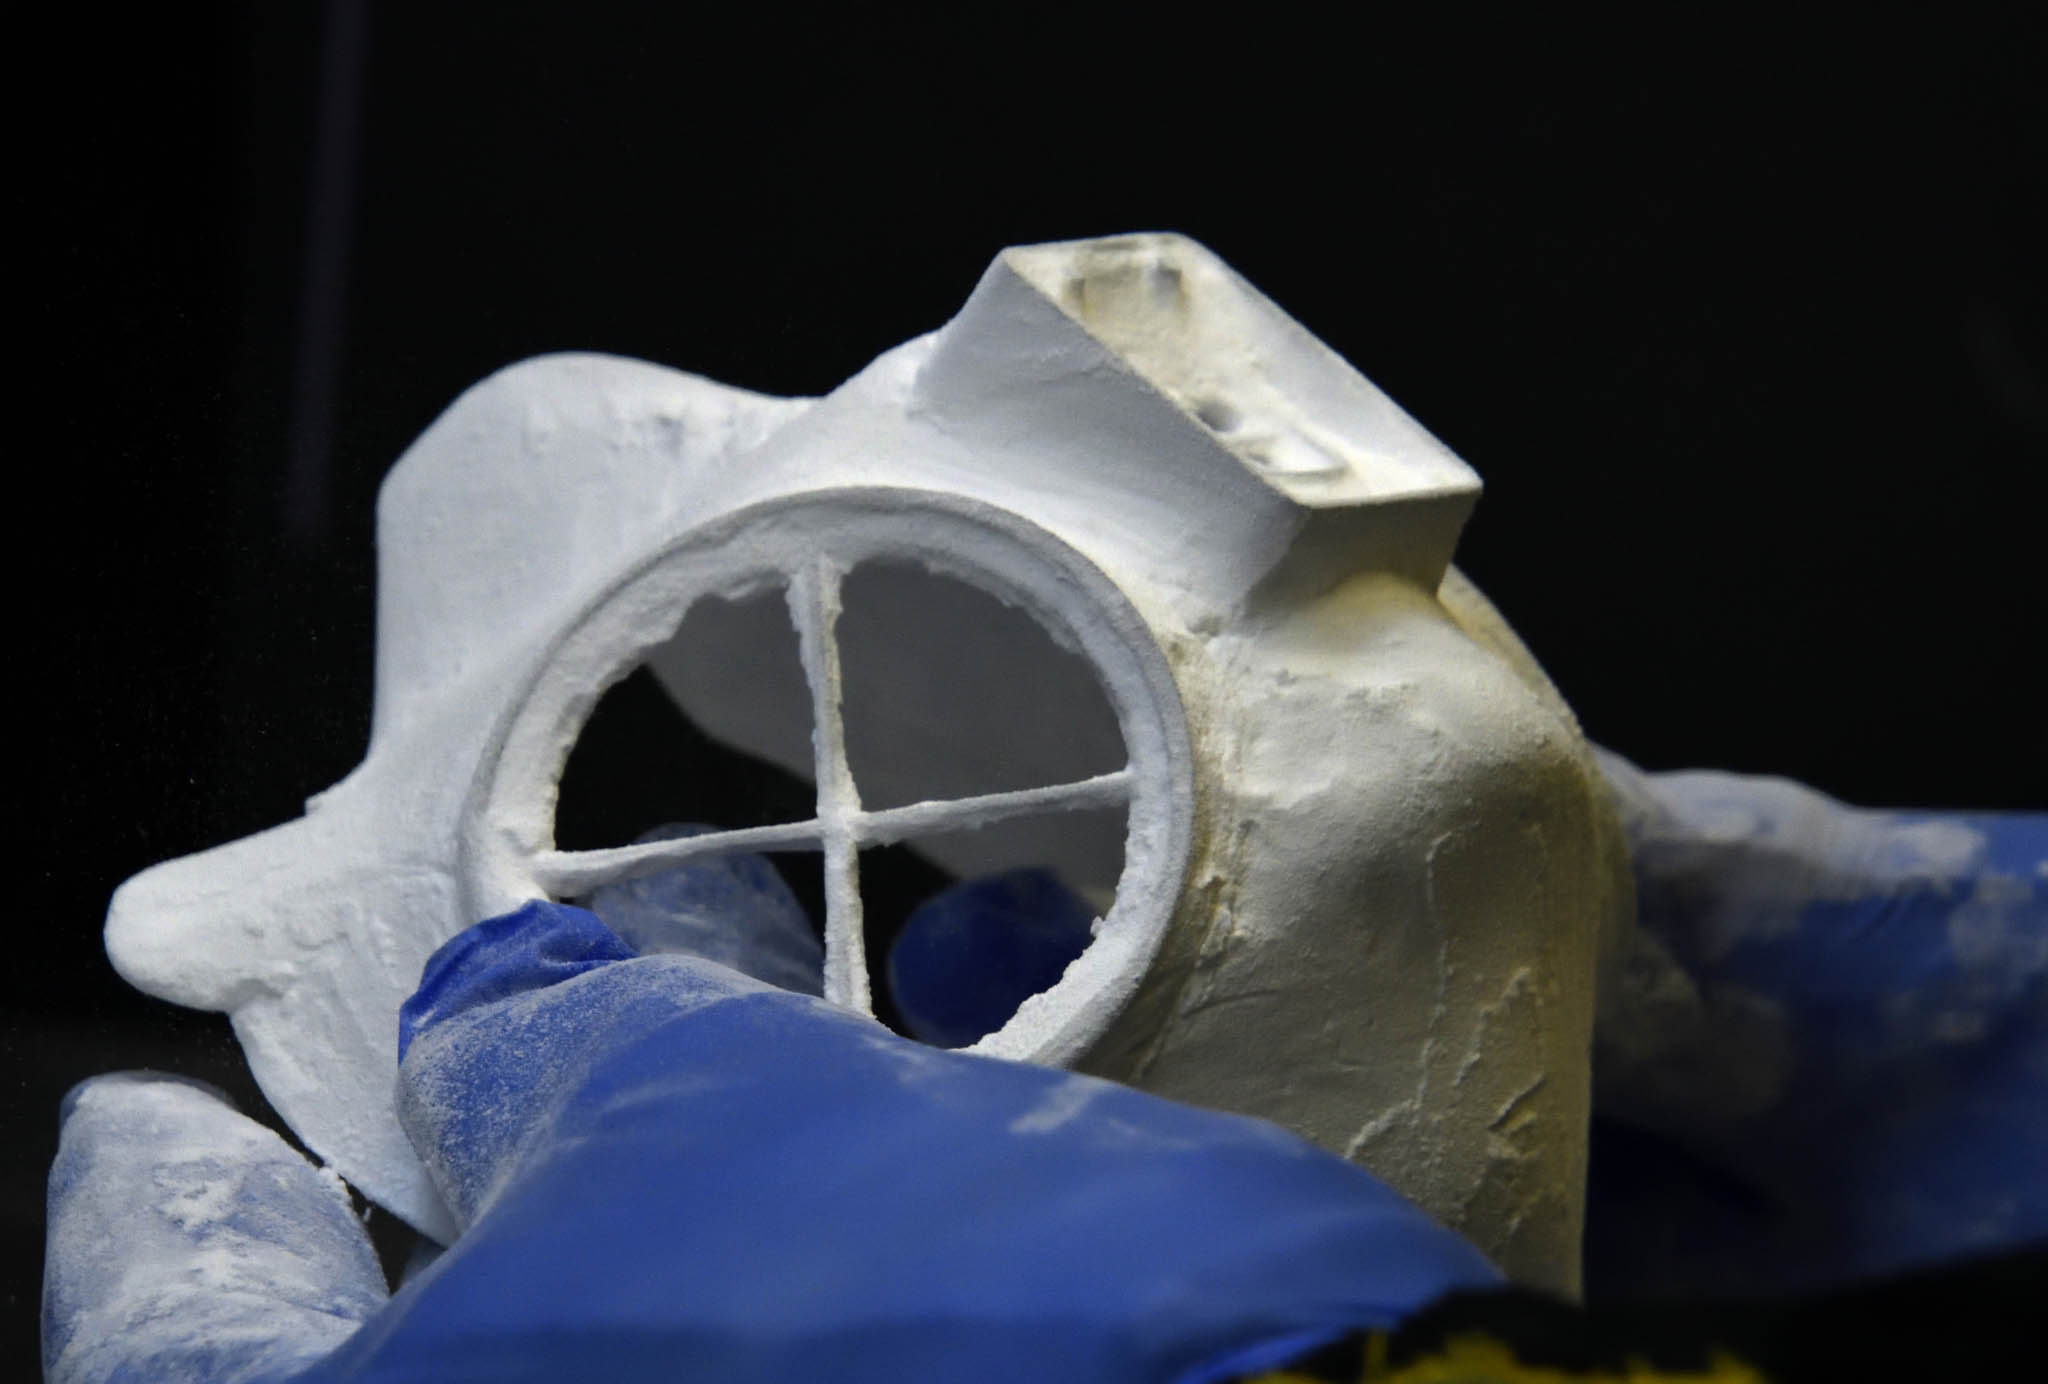 Pùvodní model ochranné masky z ÈVUT se tiskl na 3D tiskárnách. Tento týden zaène sériová výroba vstøikolisem, která mùže být nakonec až 10 tisíc kusù dennì.